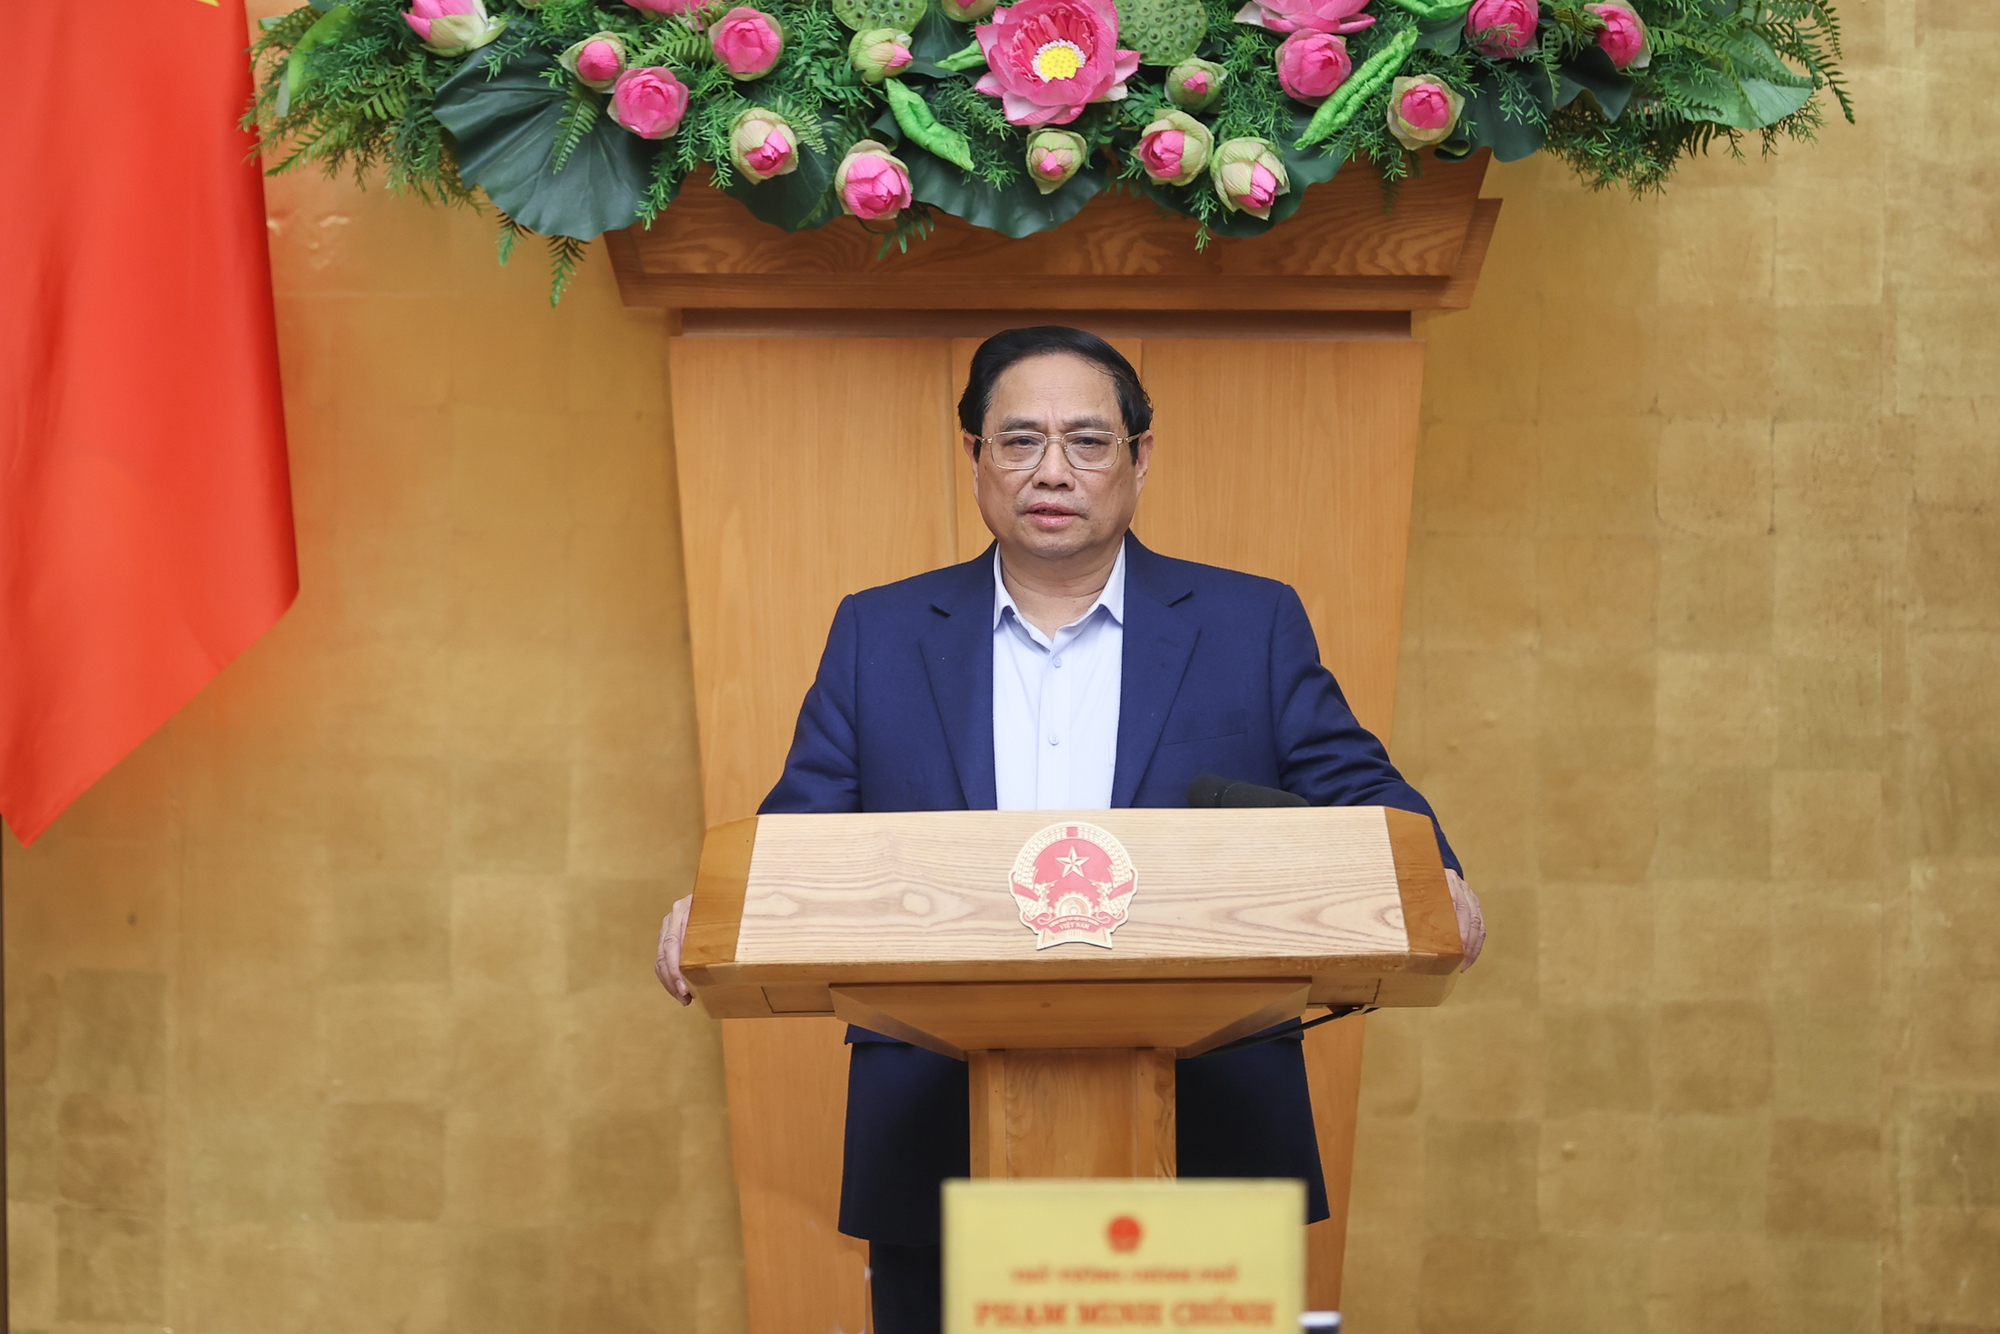 Thủ tướng Phạm Minh Chính nhấn mạnh: Các bộ, ngành, địa phương tập trung thực hiện 10 nhóm nhiệm vụ, giải pháp, tạo khí thế mới, động lực mới, thắng lợi mới - Ảnh: VGP/Nhật Bắc